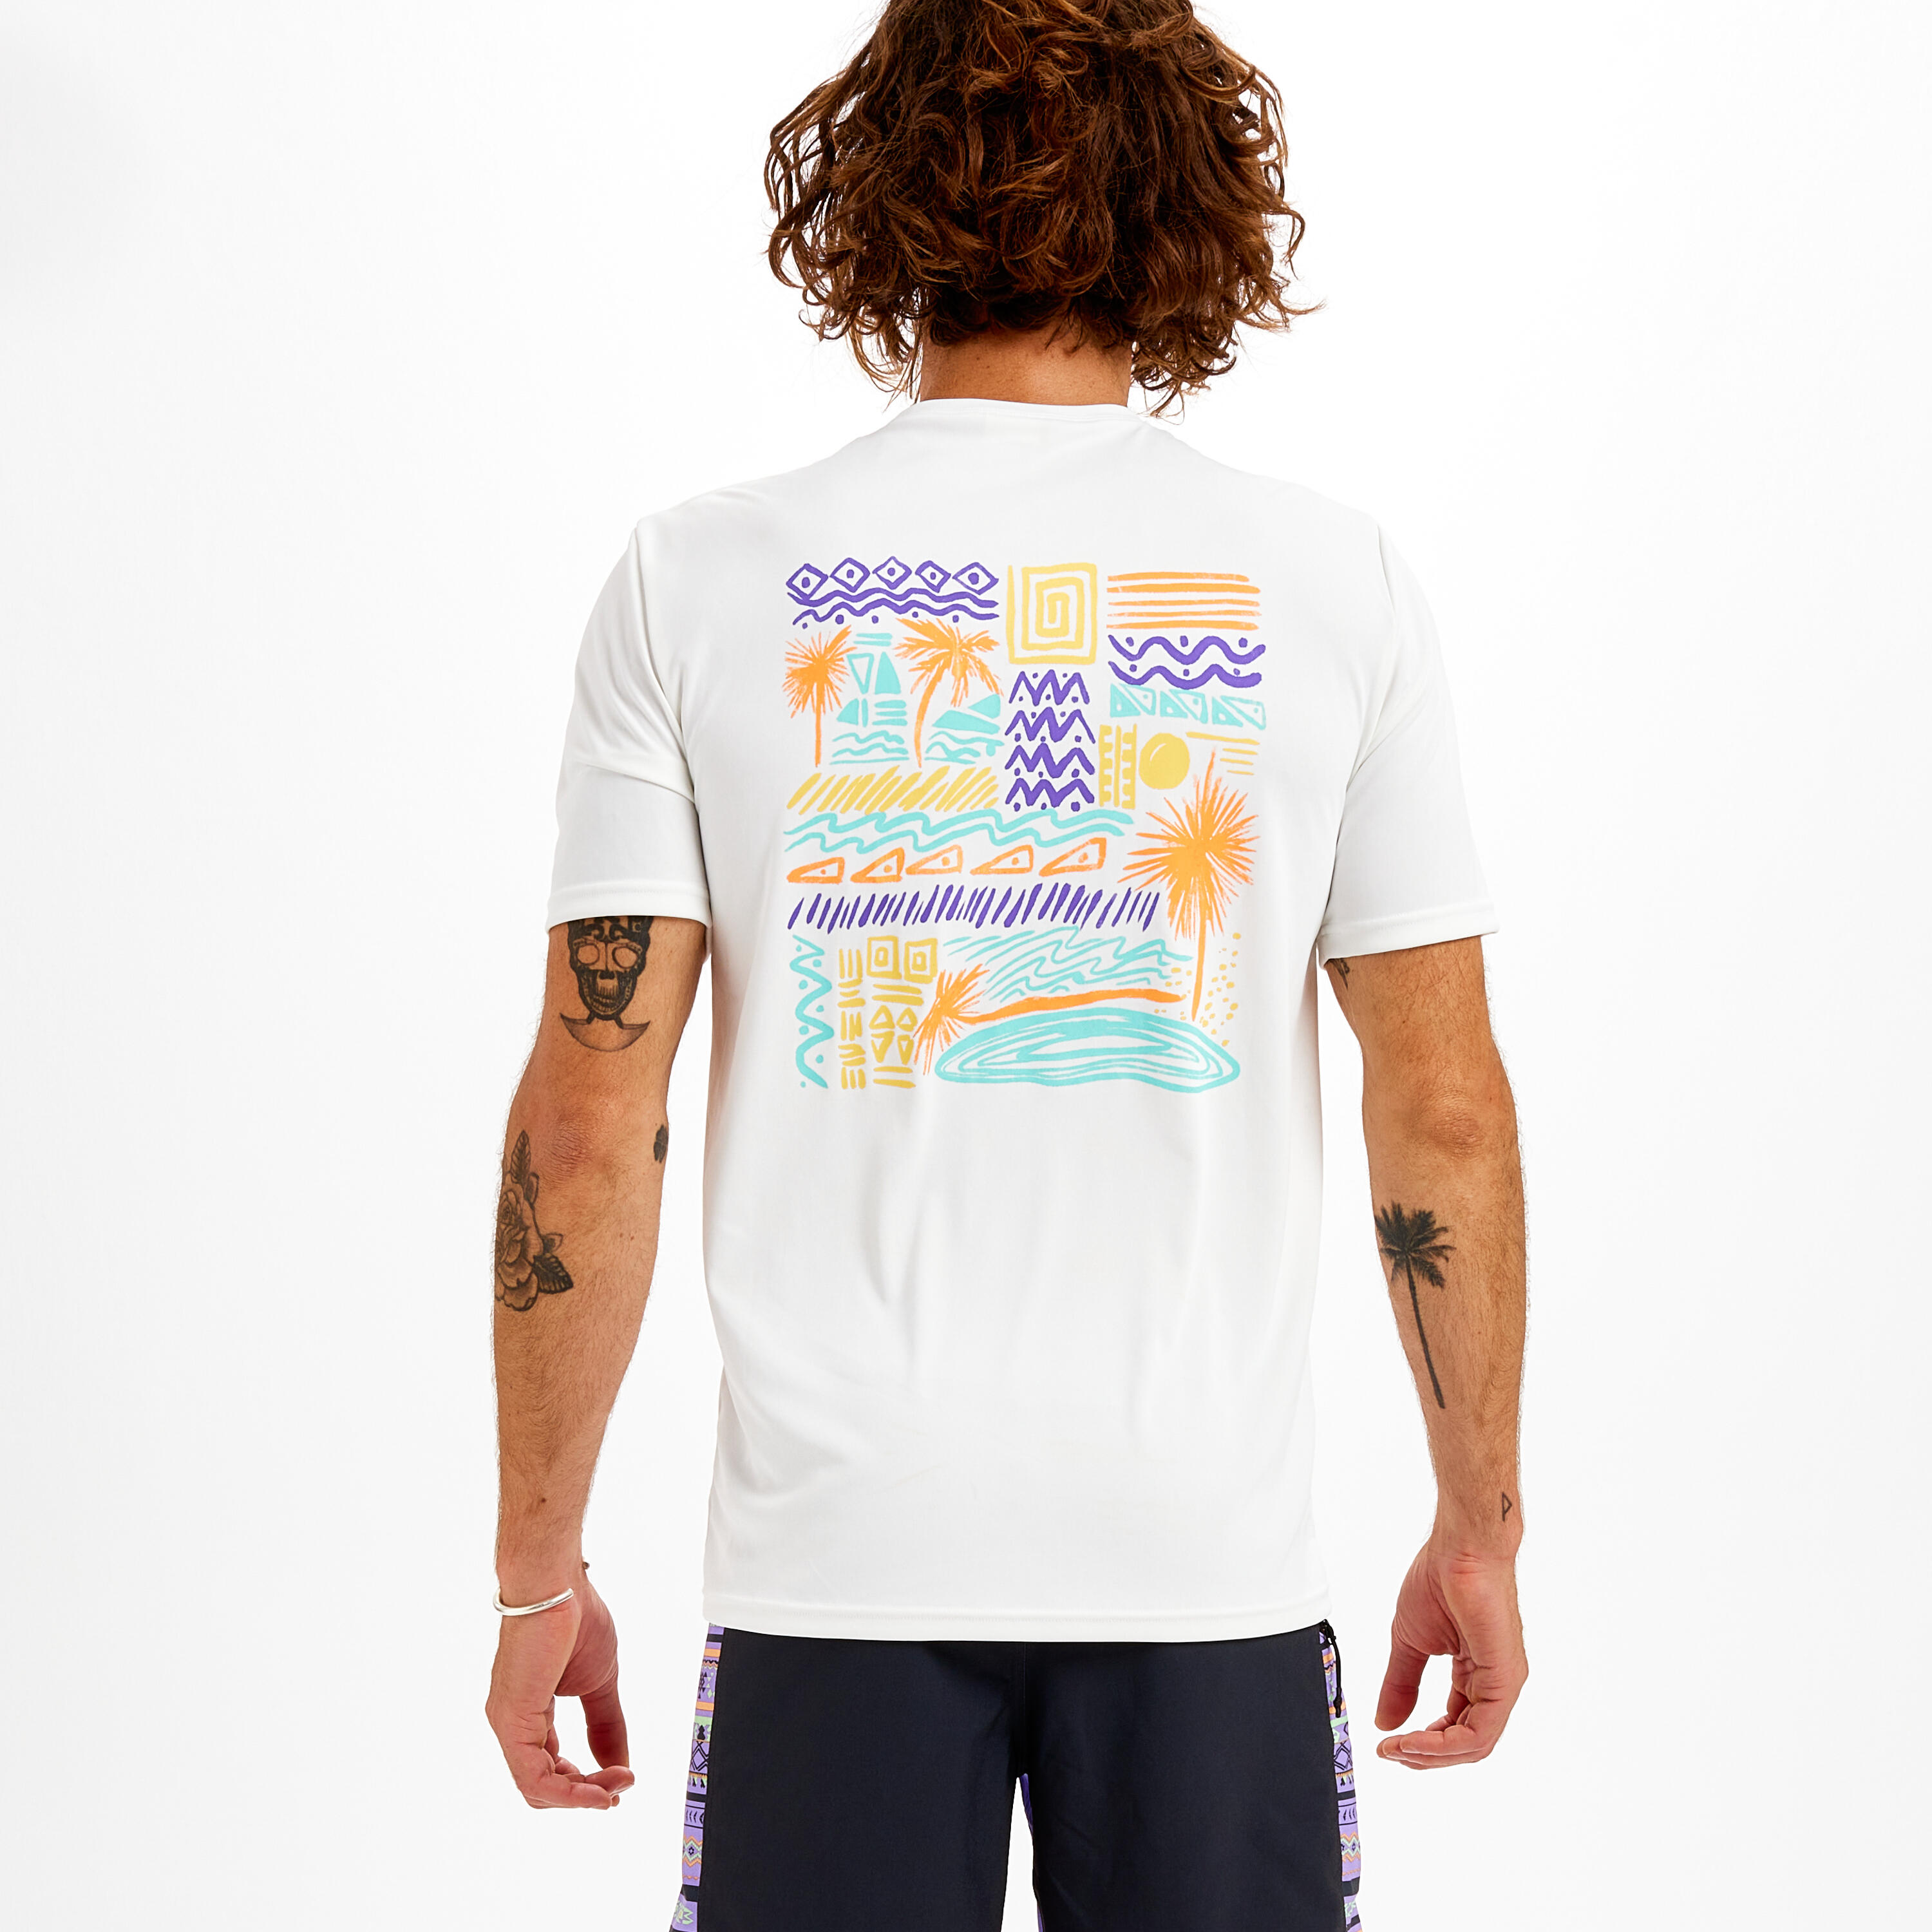 Men's Surfing Short-Sleeved Anti-UV T-Shirt - Palm white 4/9